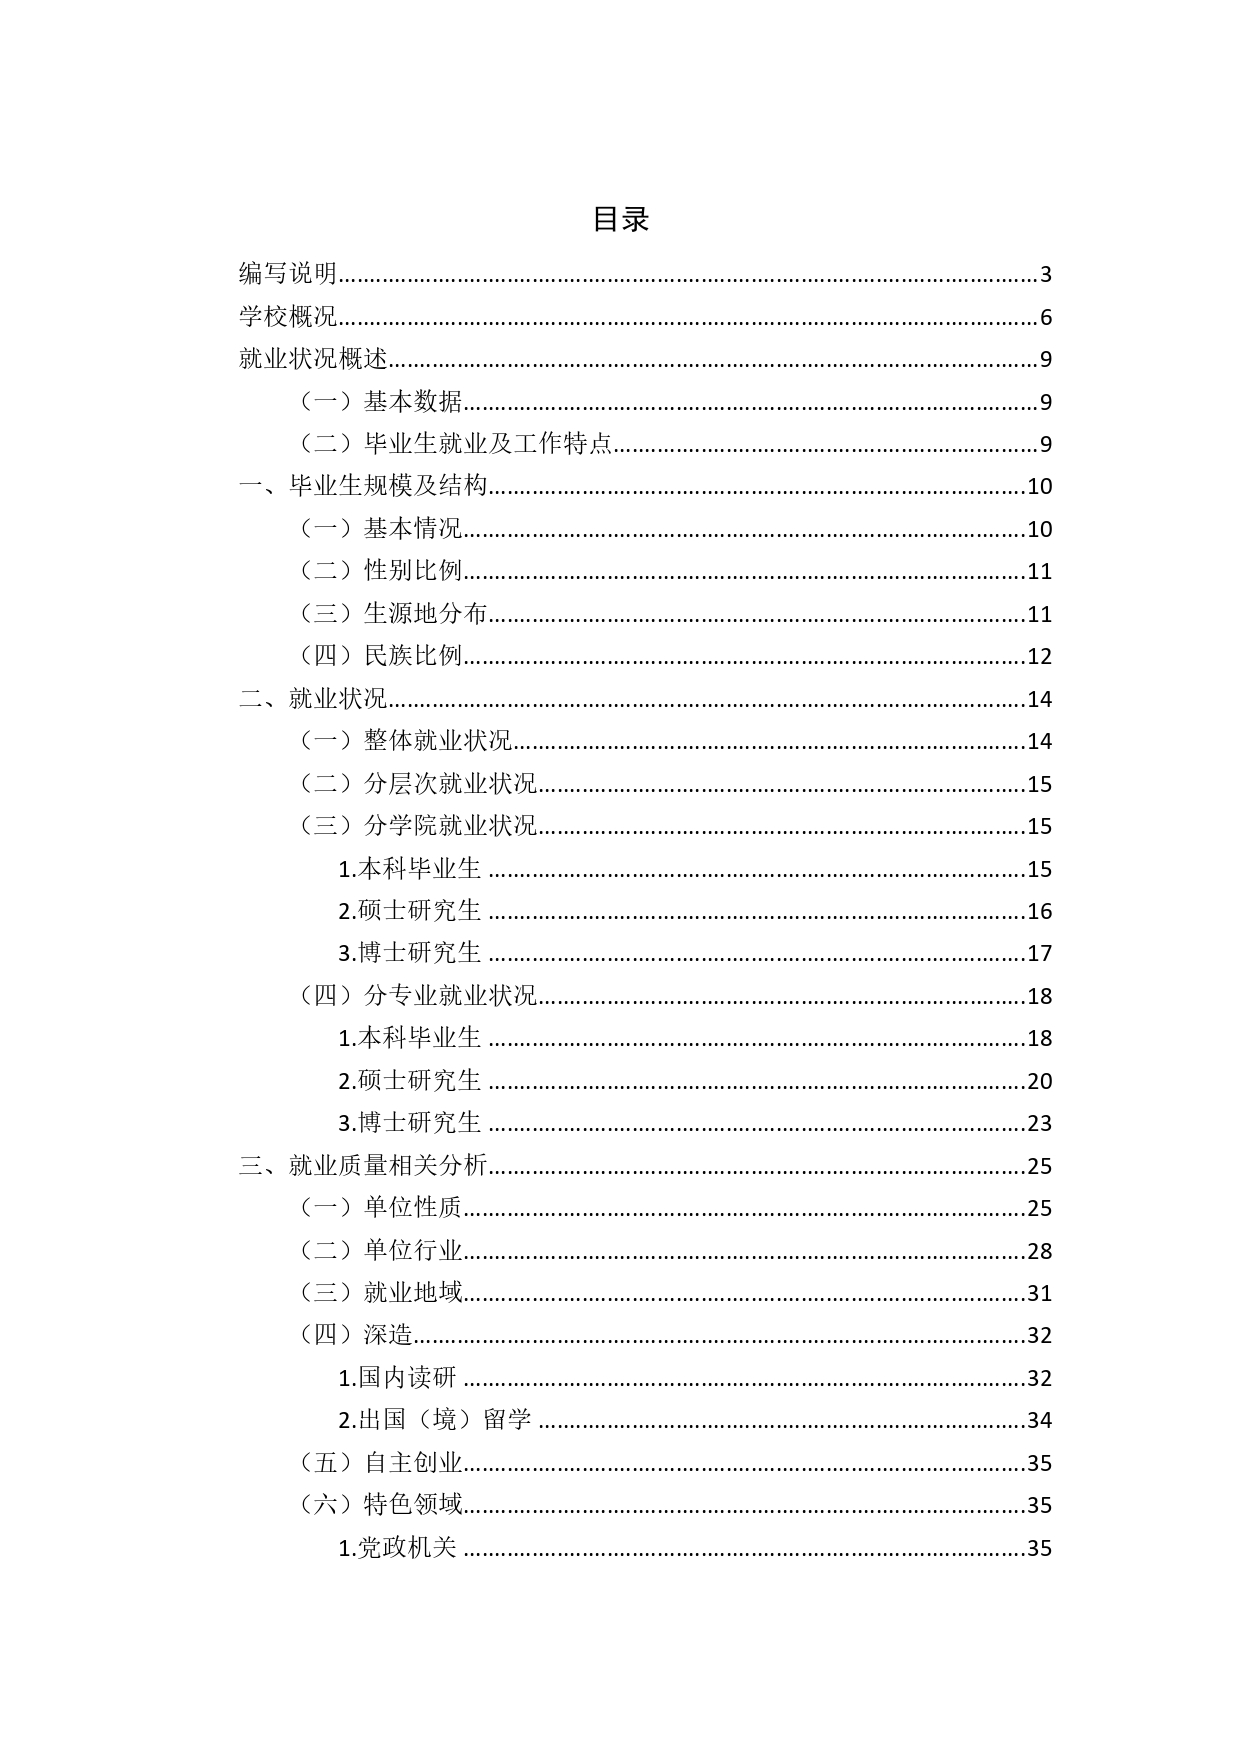 中国政法大学2019年毕业生就业质量报告